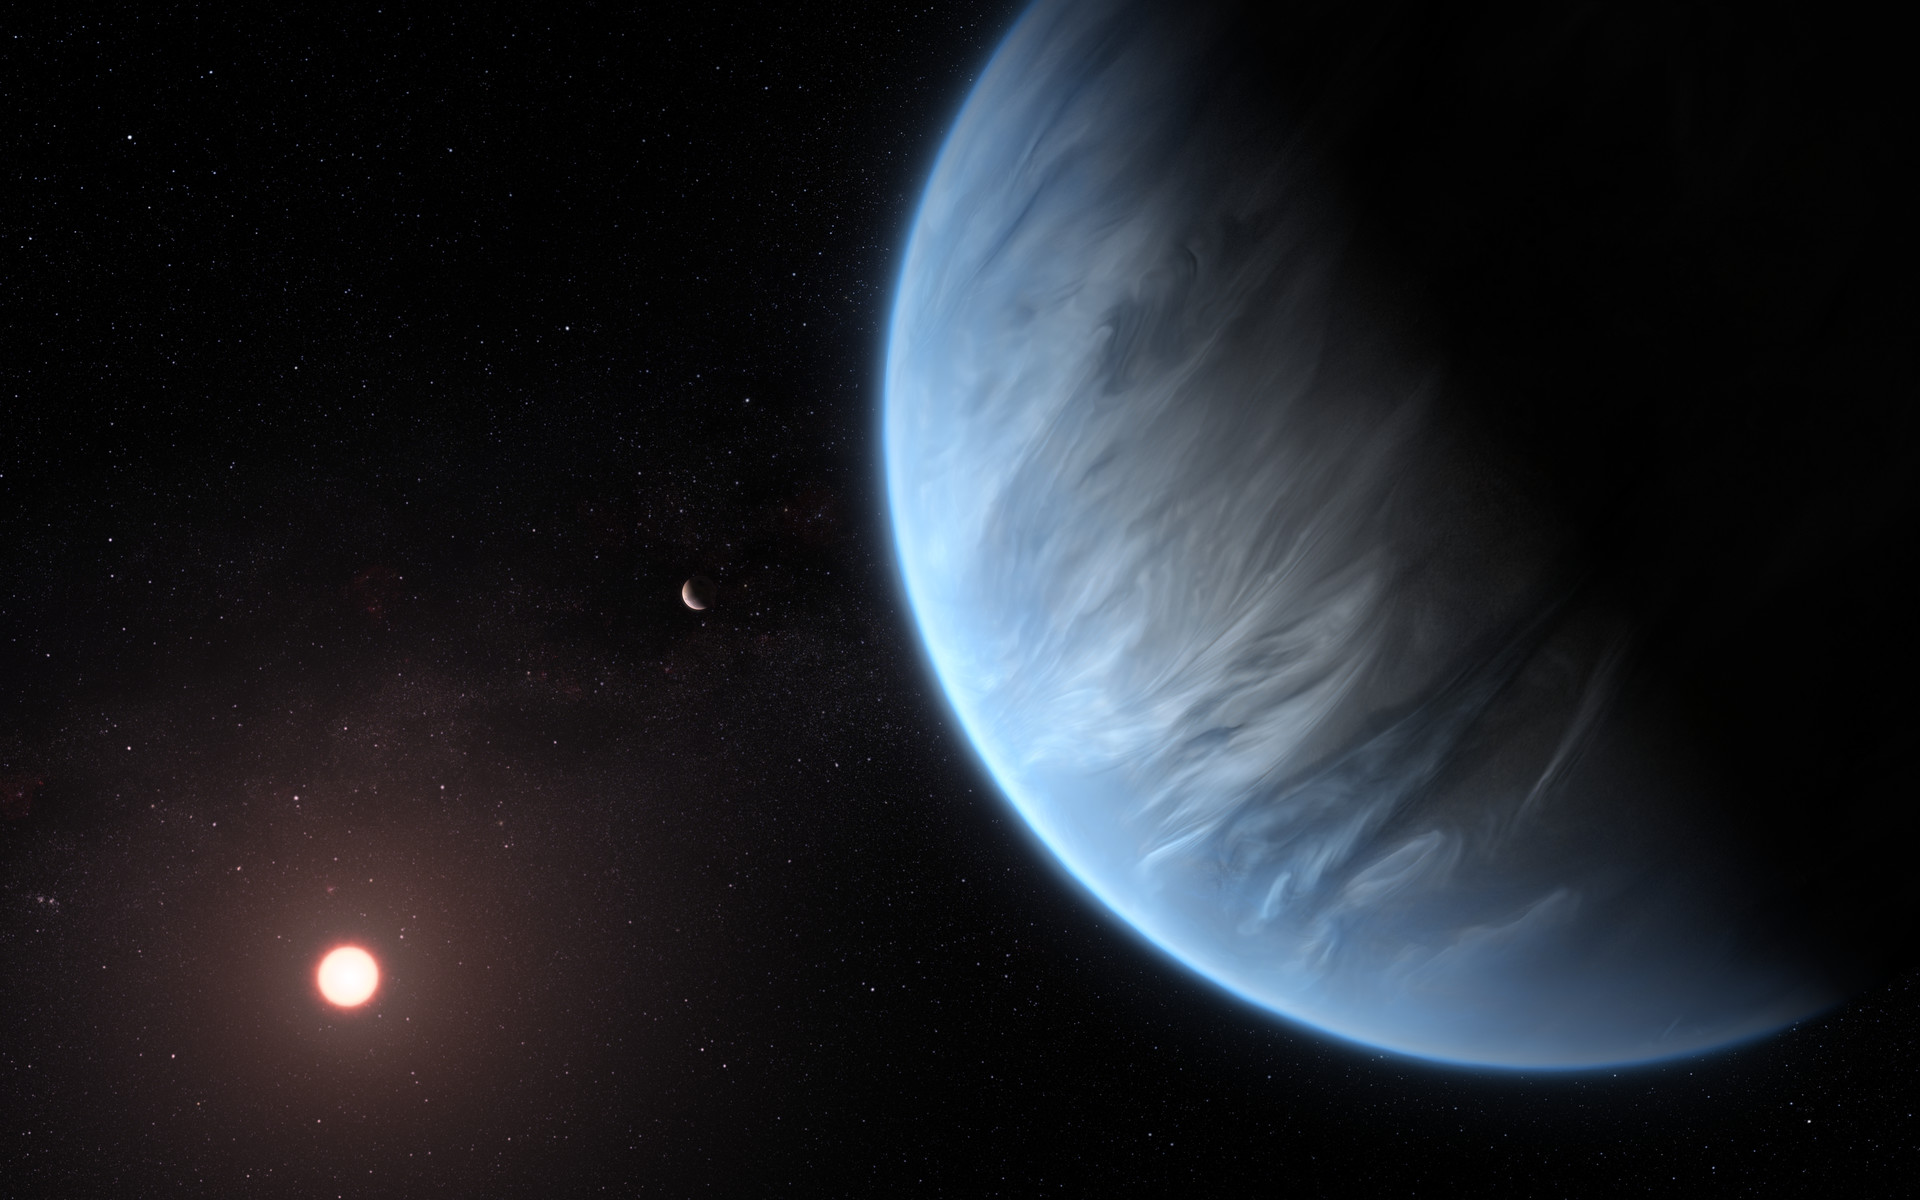 Une vue d'artiste de l'exoplanète K2-18b. © ESA, Hubble, M. Kornmesser